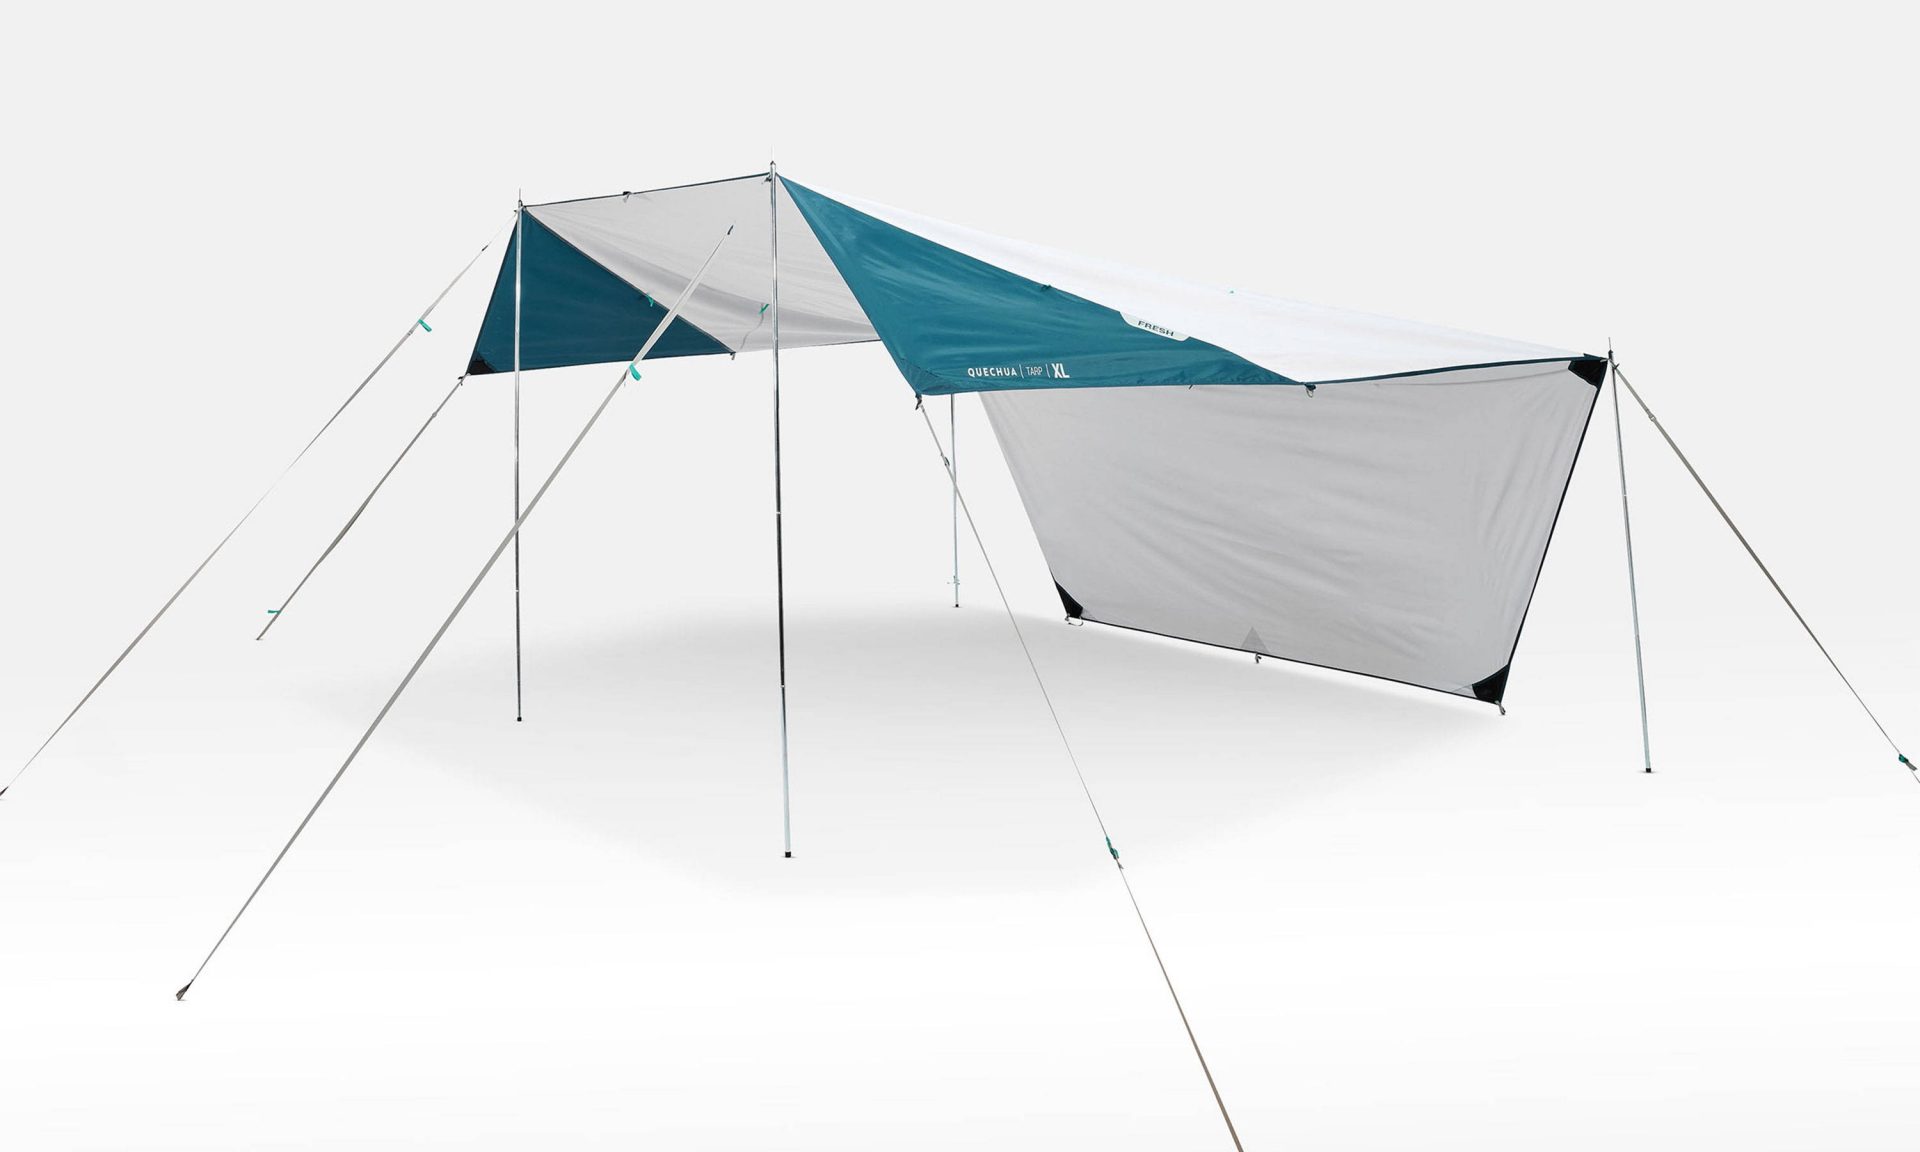 話題のデカトロン 2021年の新商品テント/タープなど14商品 | キャンプ 